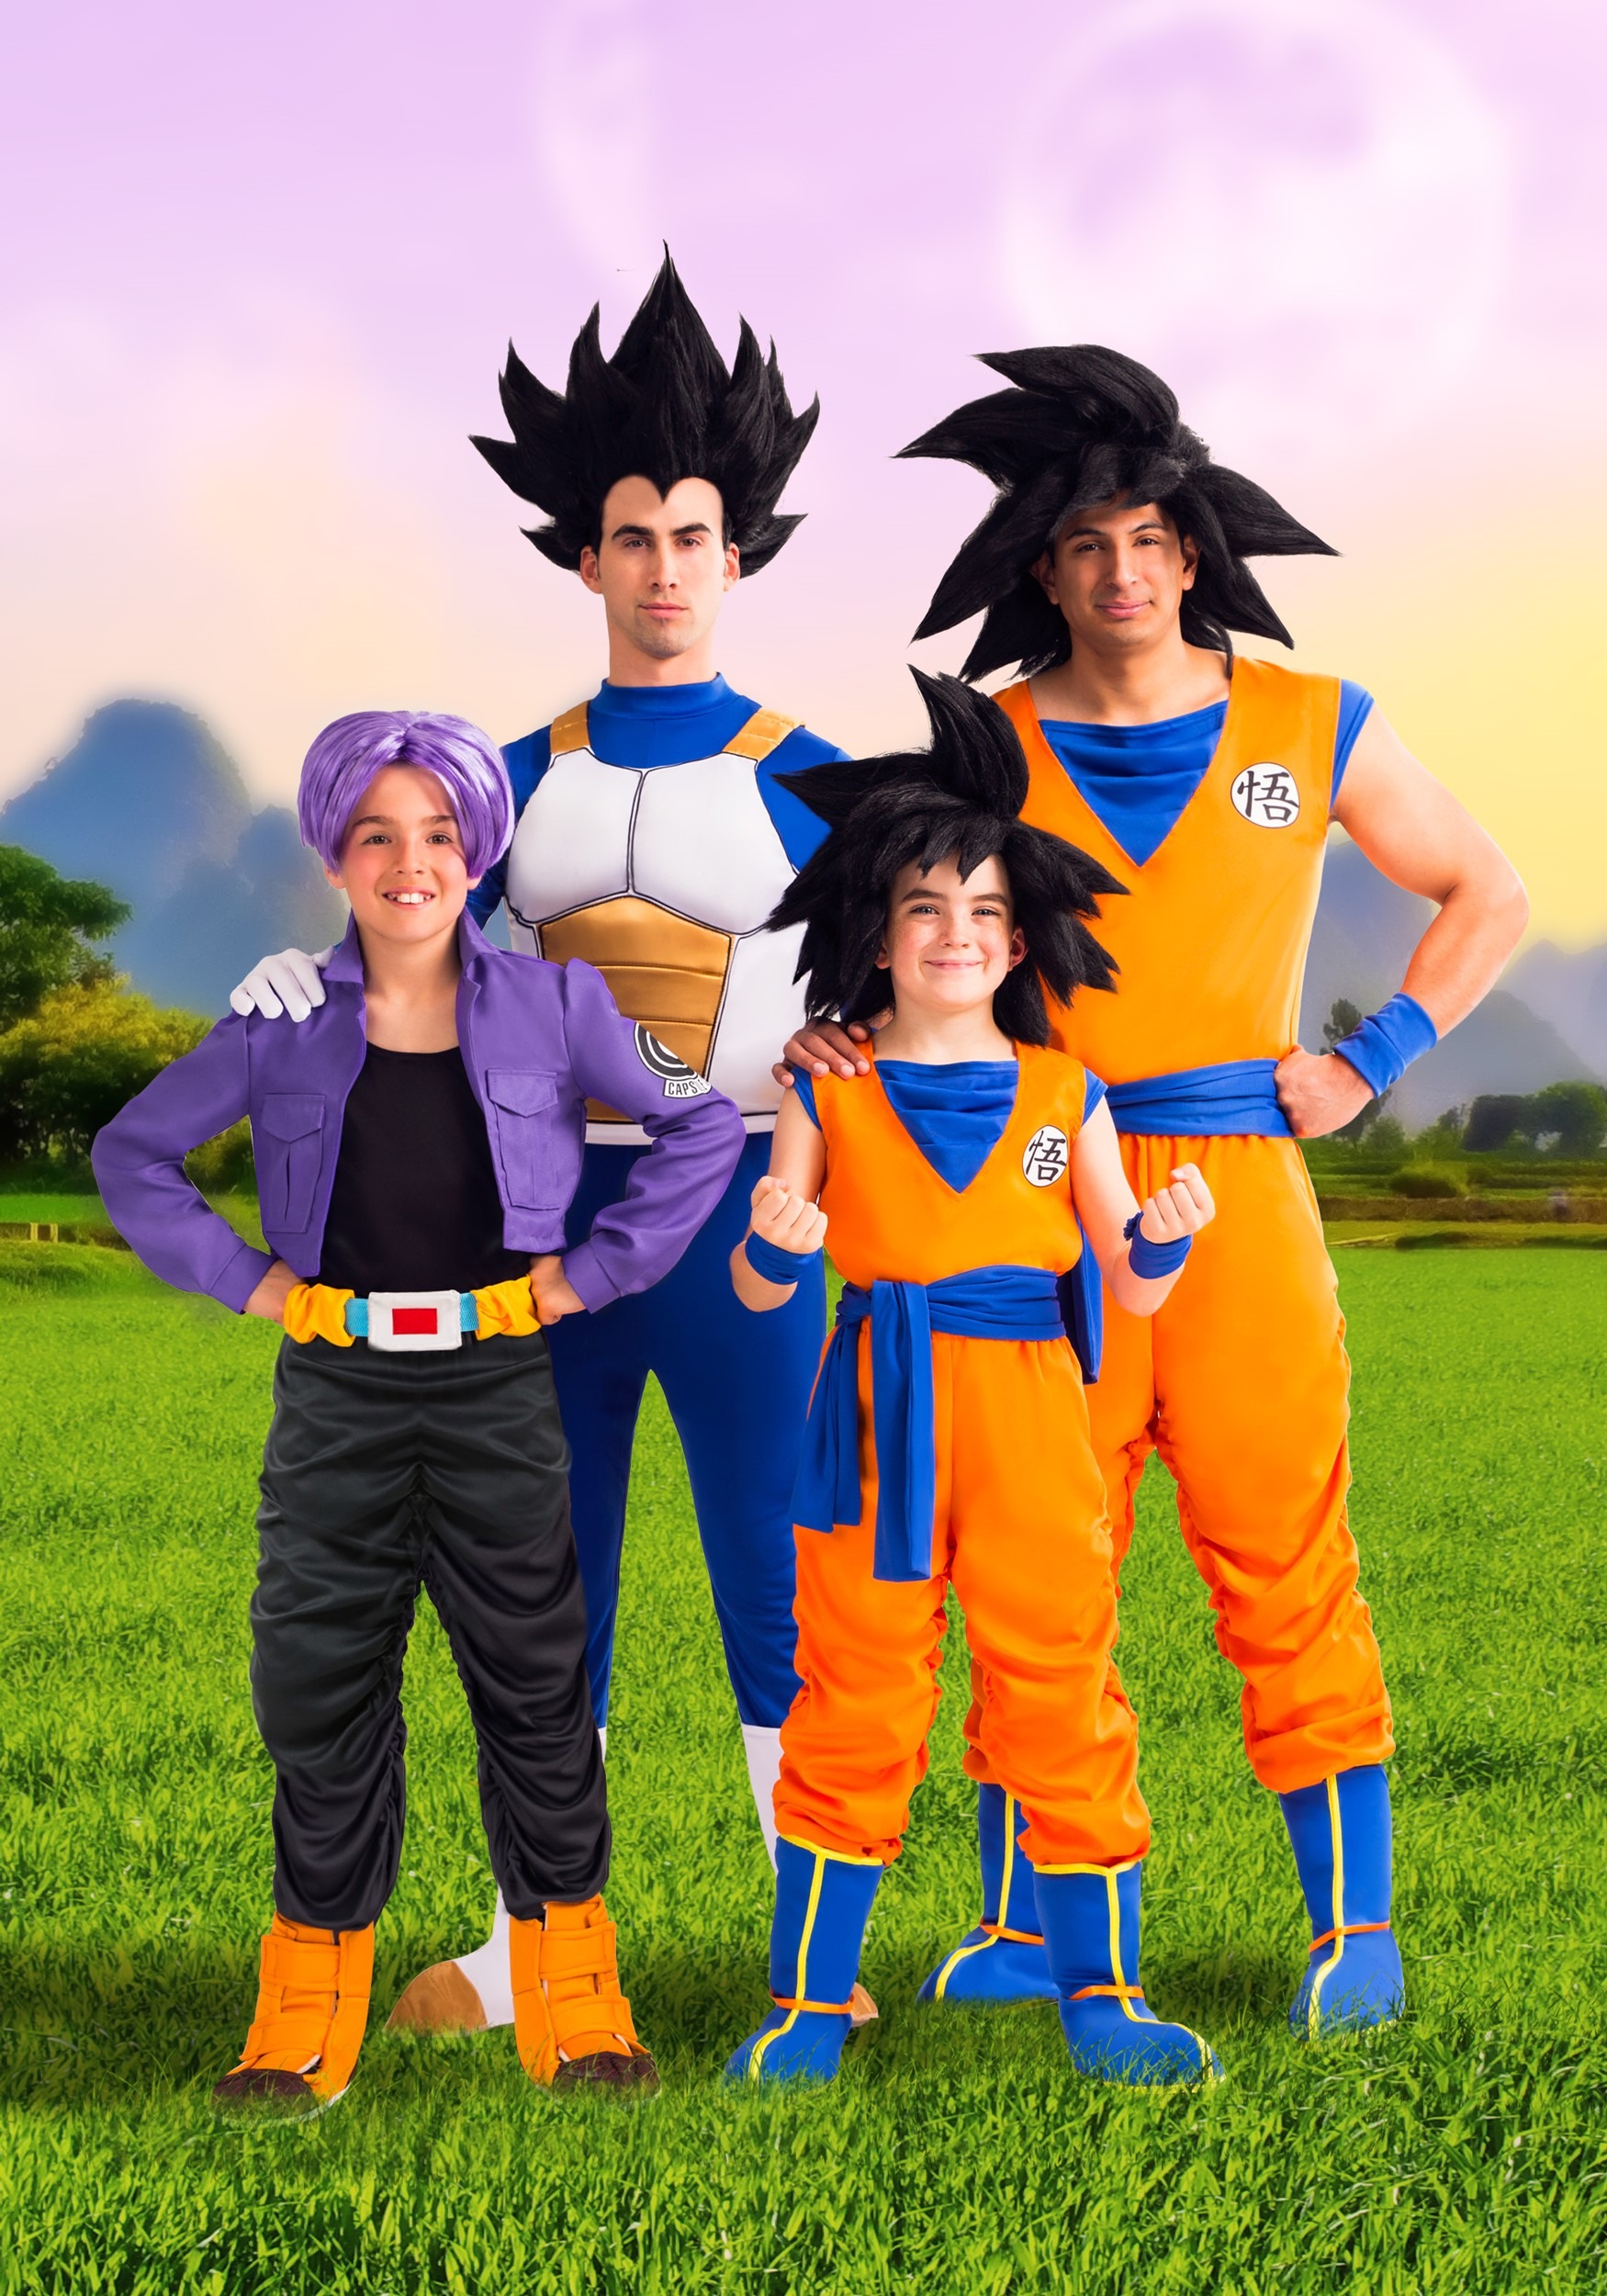 Peluca Goku Dragon Ball™ adulto: Accesorios,y disfraces originales baratos  - Vegaoo